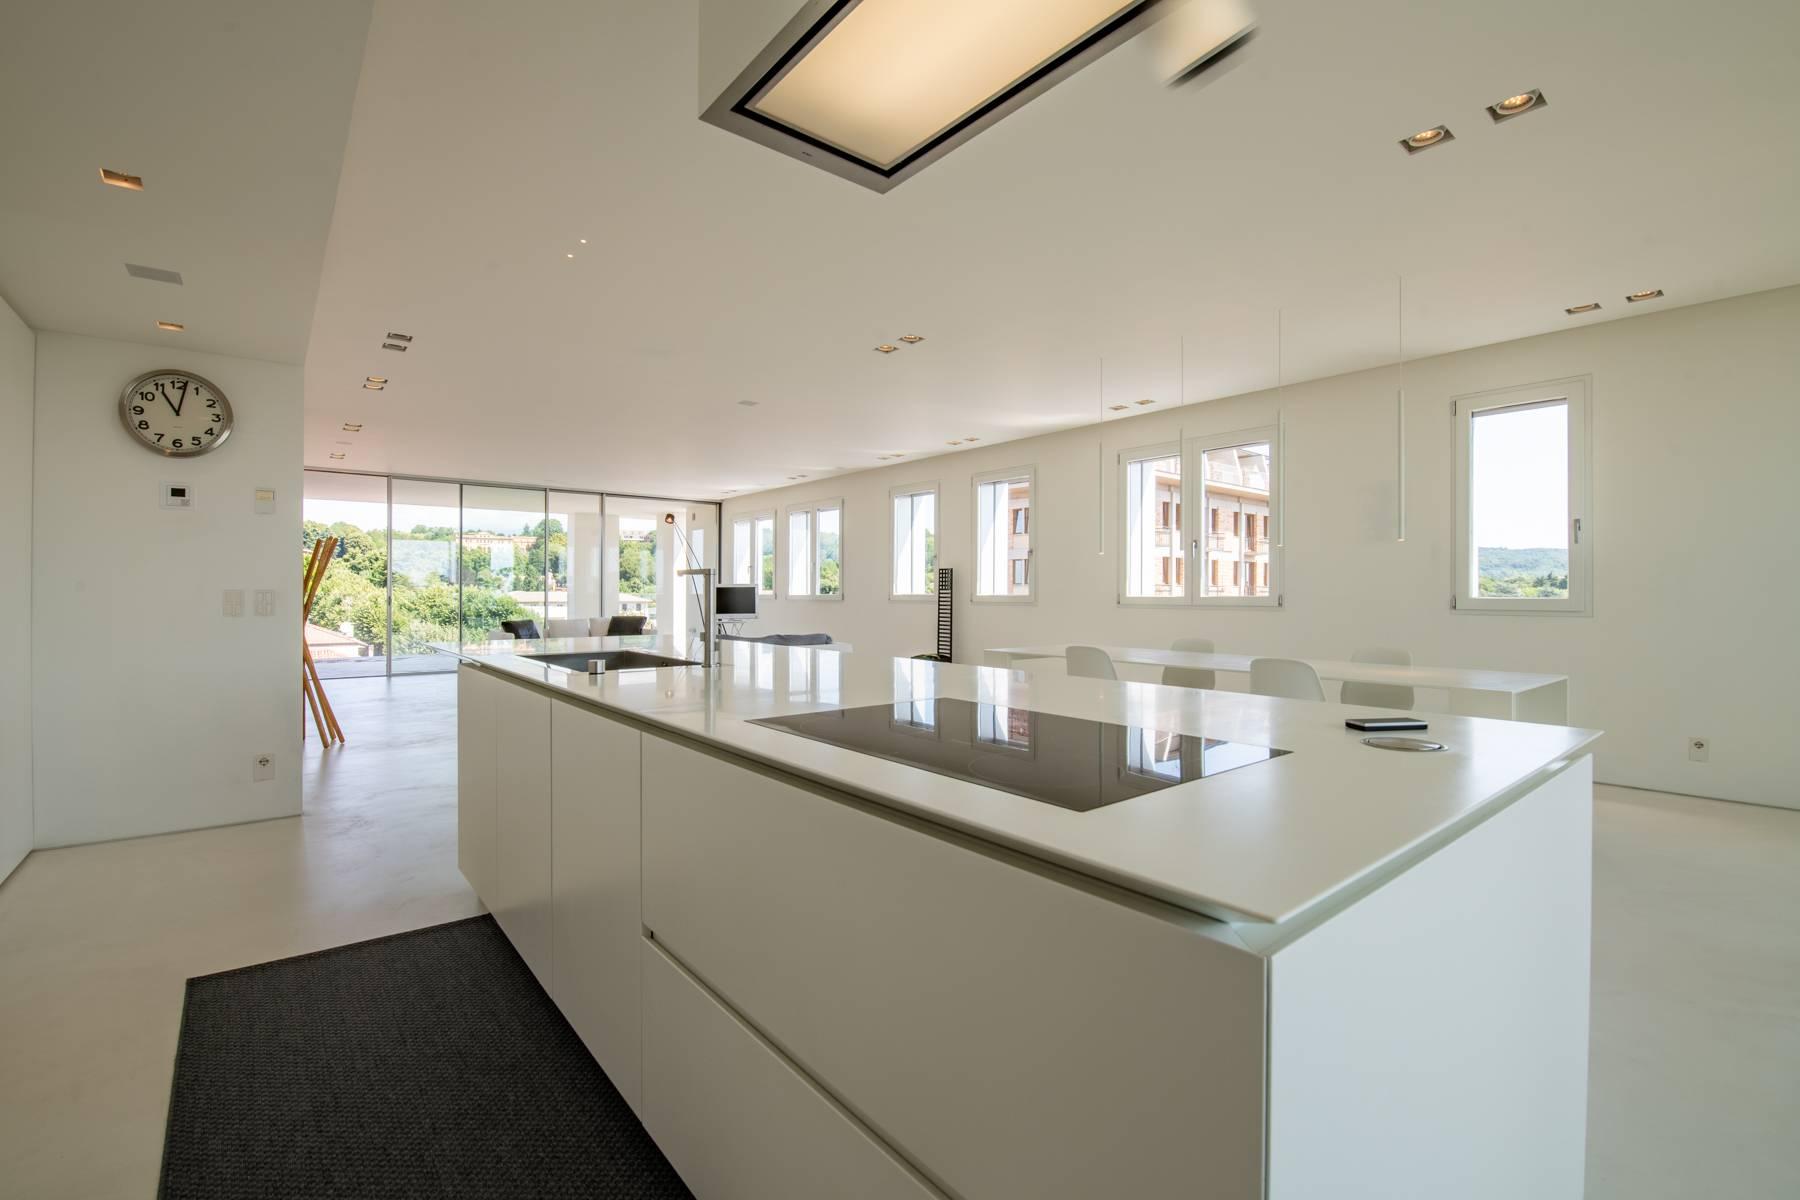 Penthouse élégant panoramique et à haute efficacité énergétique avec un design moderne raffiné - 6